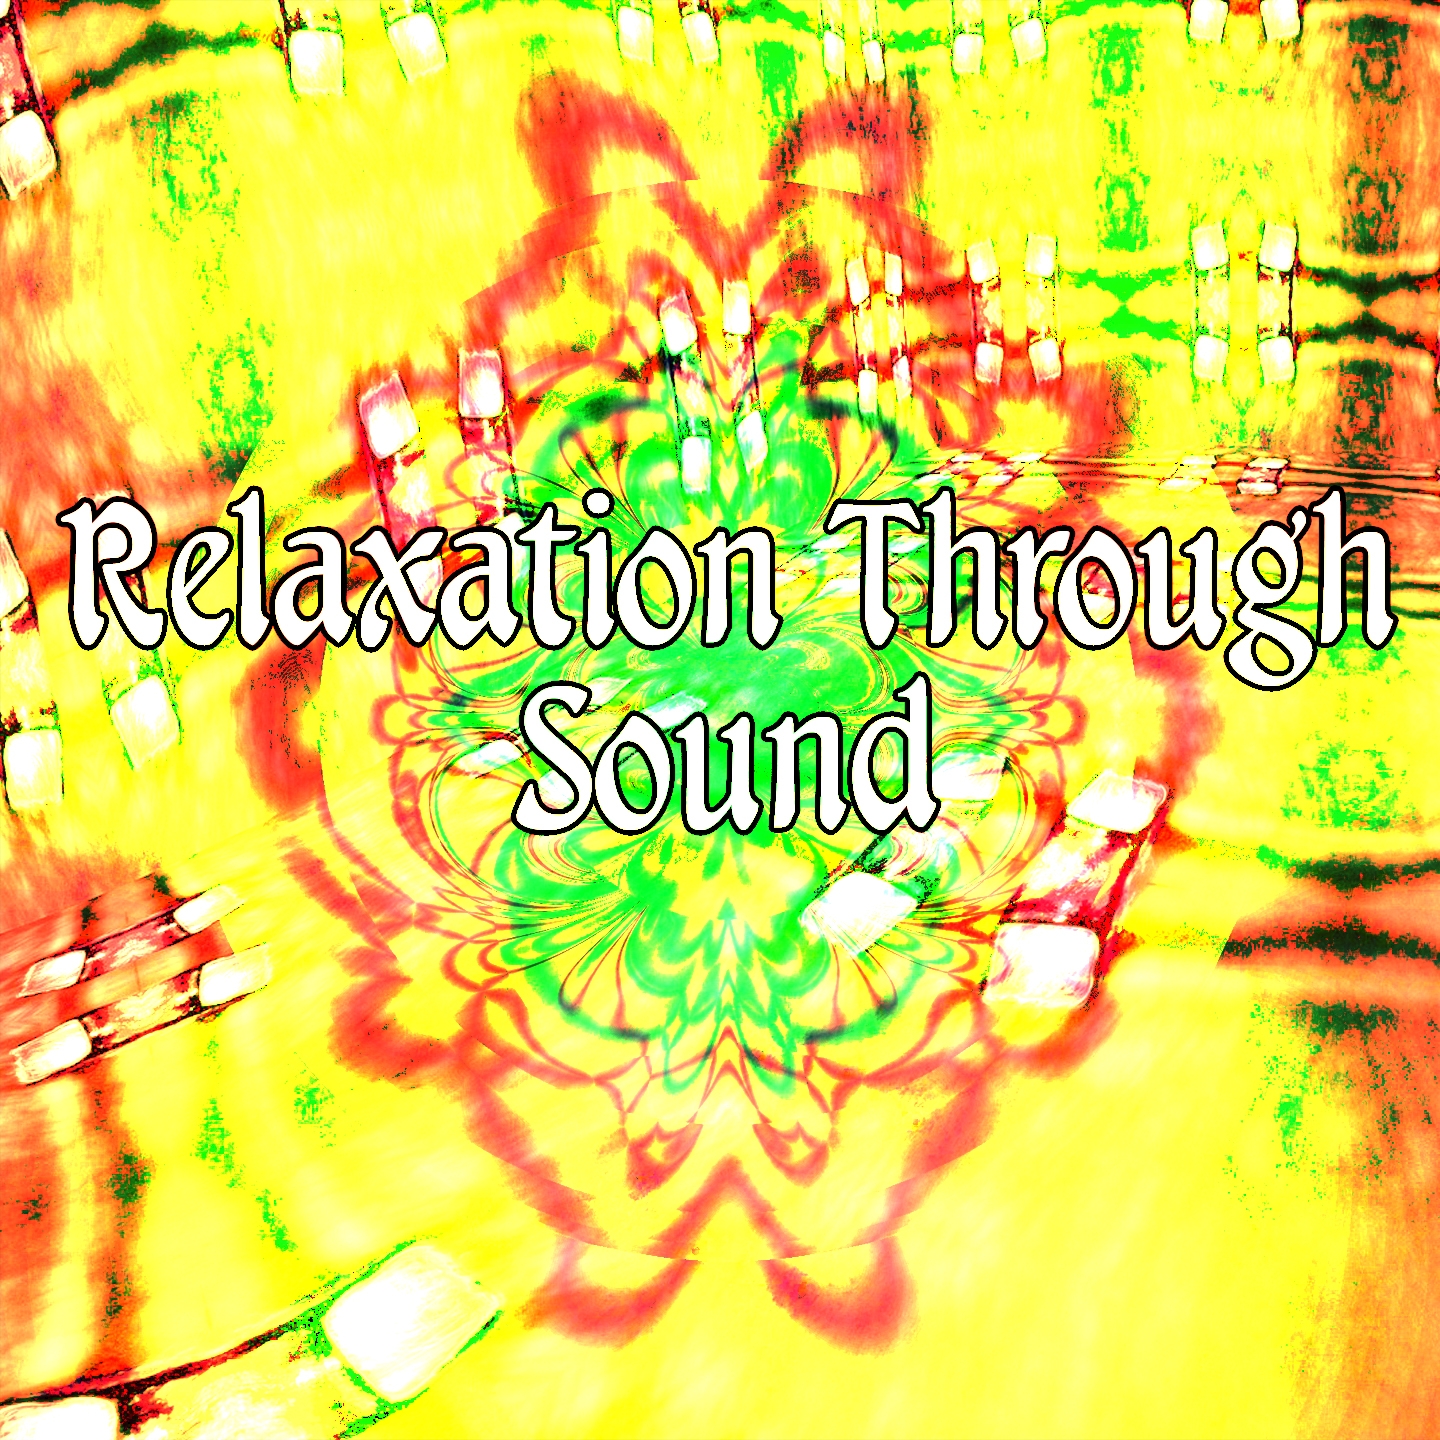 Relaxation Through Sound